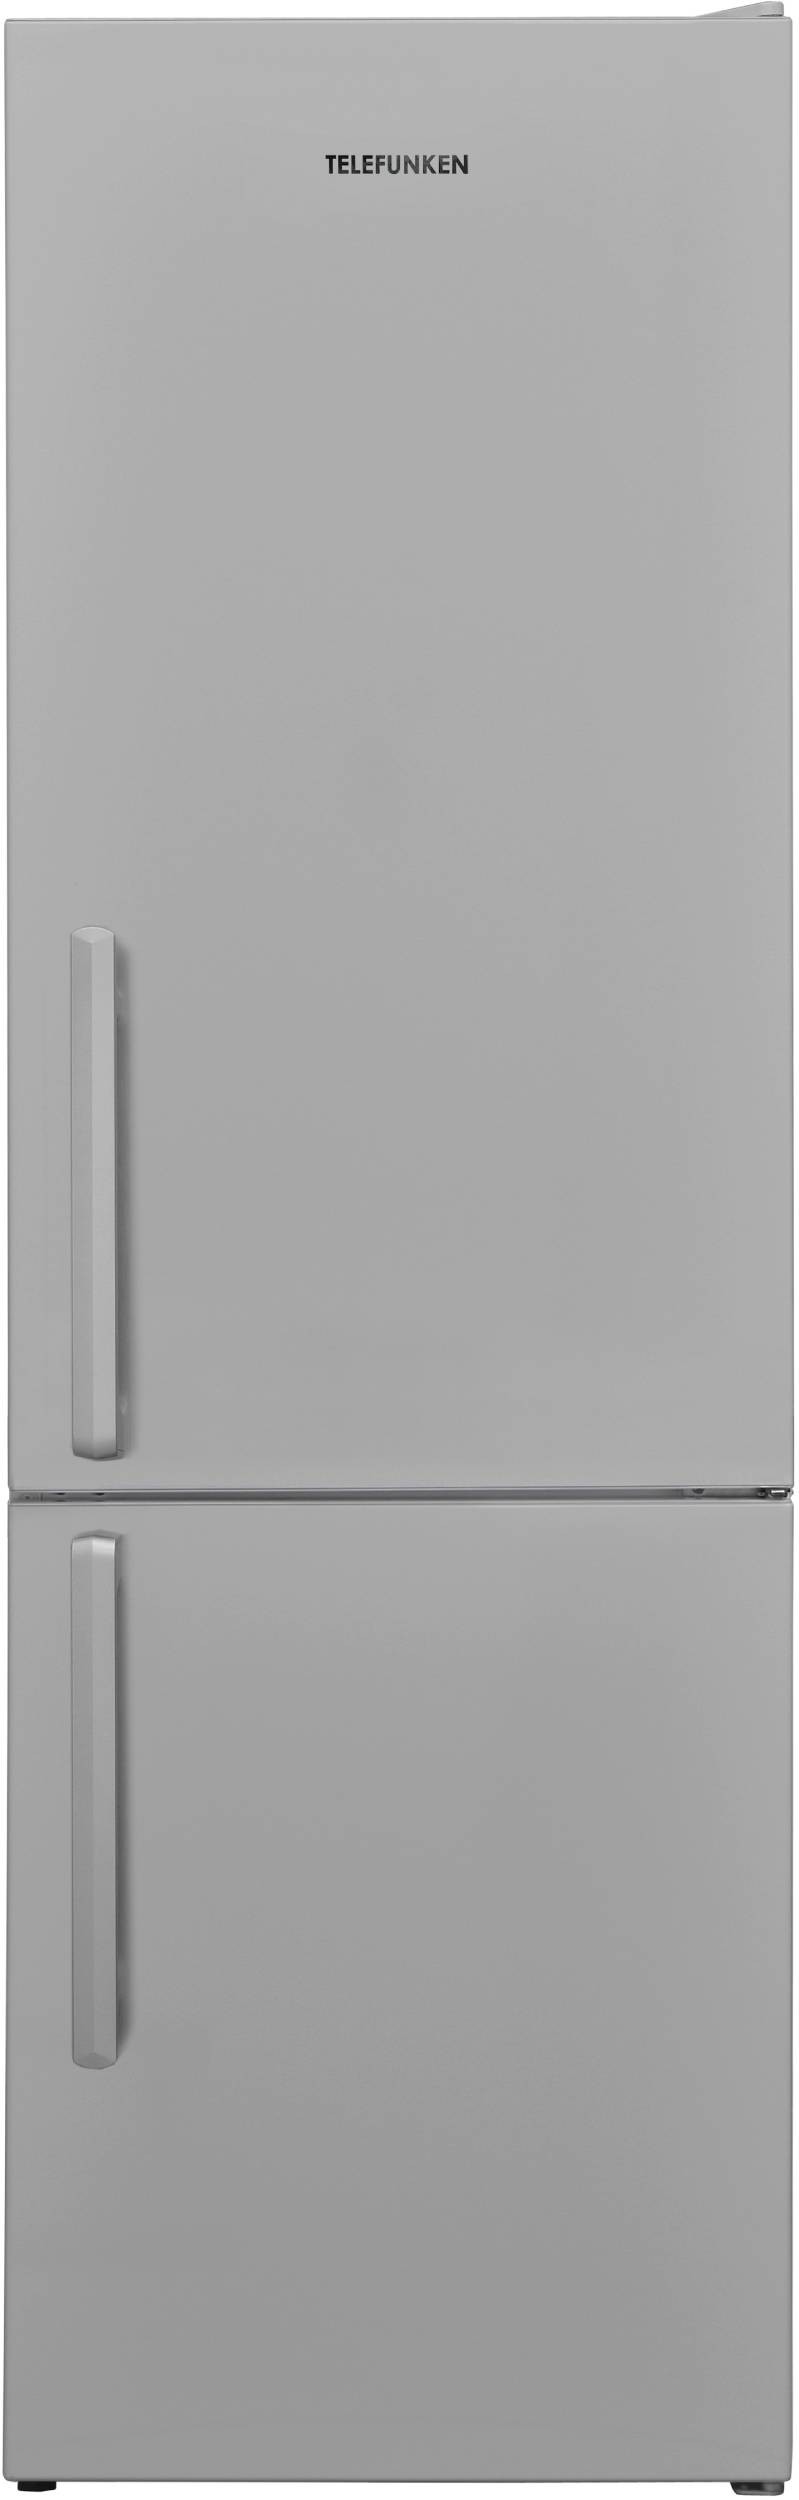 TELEFUNKEN Réfrigérateur congélateur bas Froid Statique 268L Gris  CB268PFS